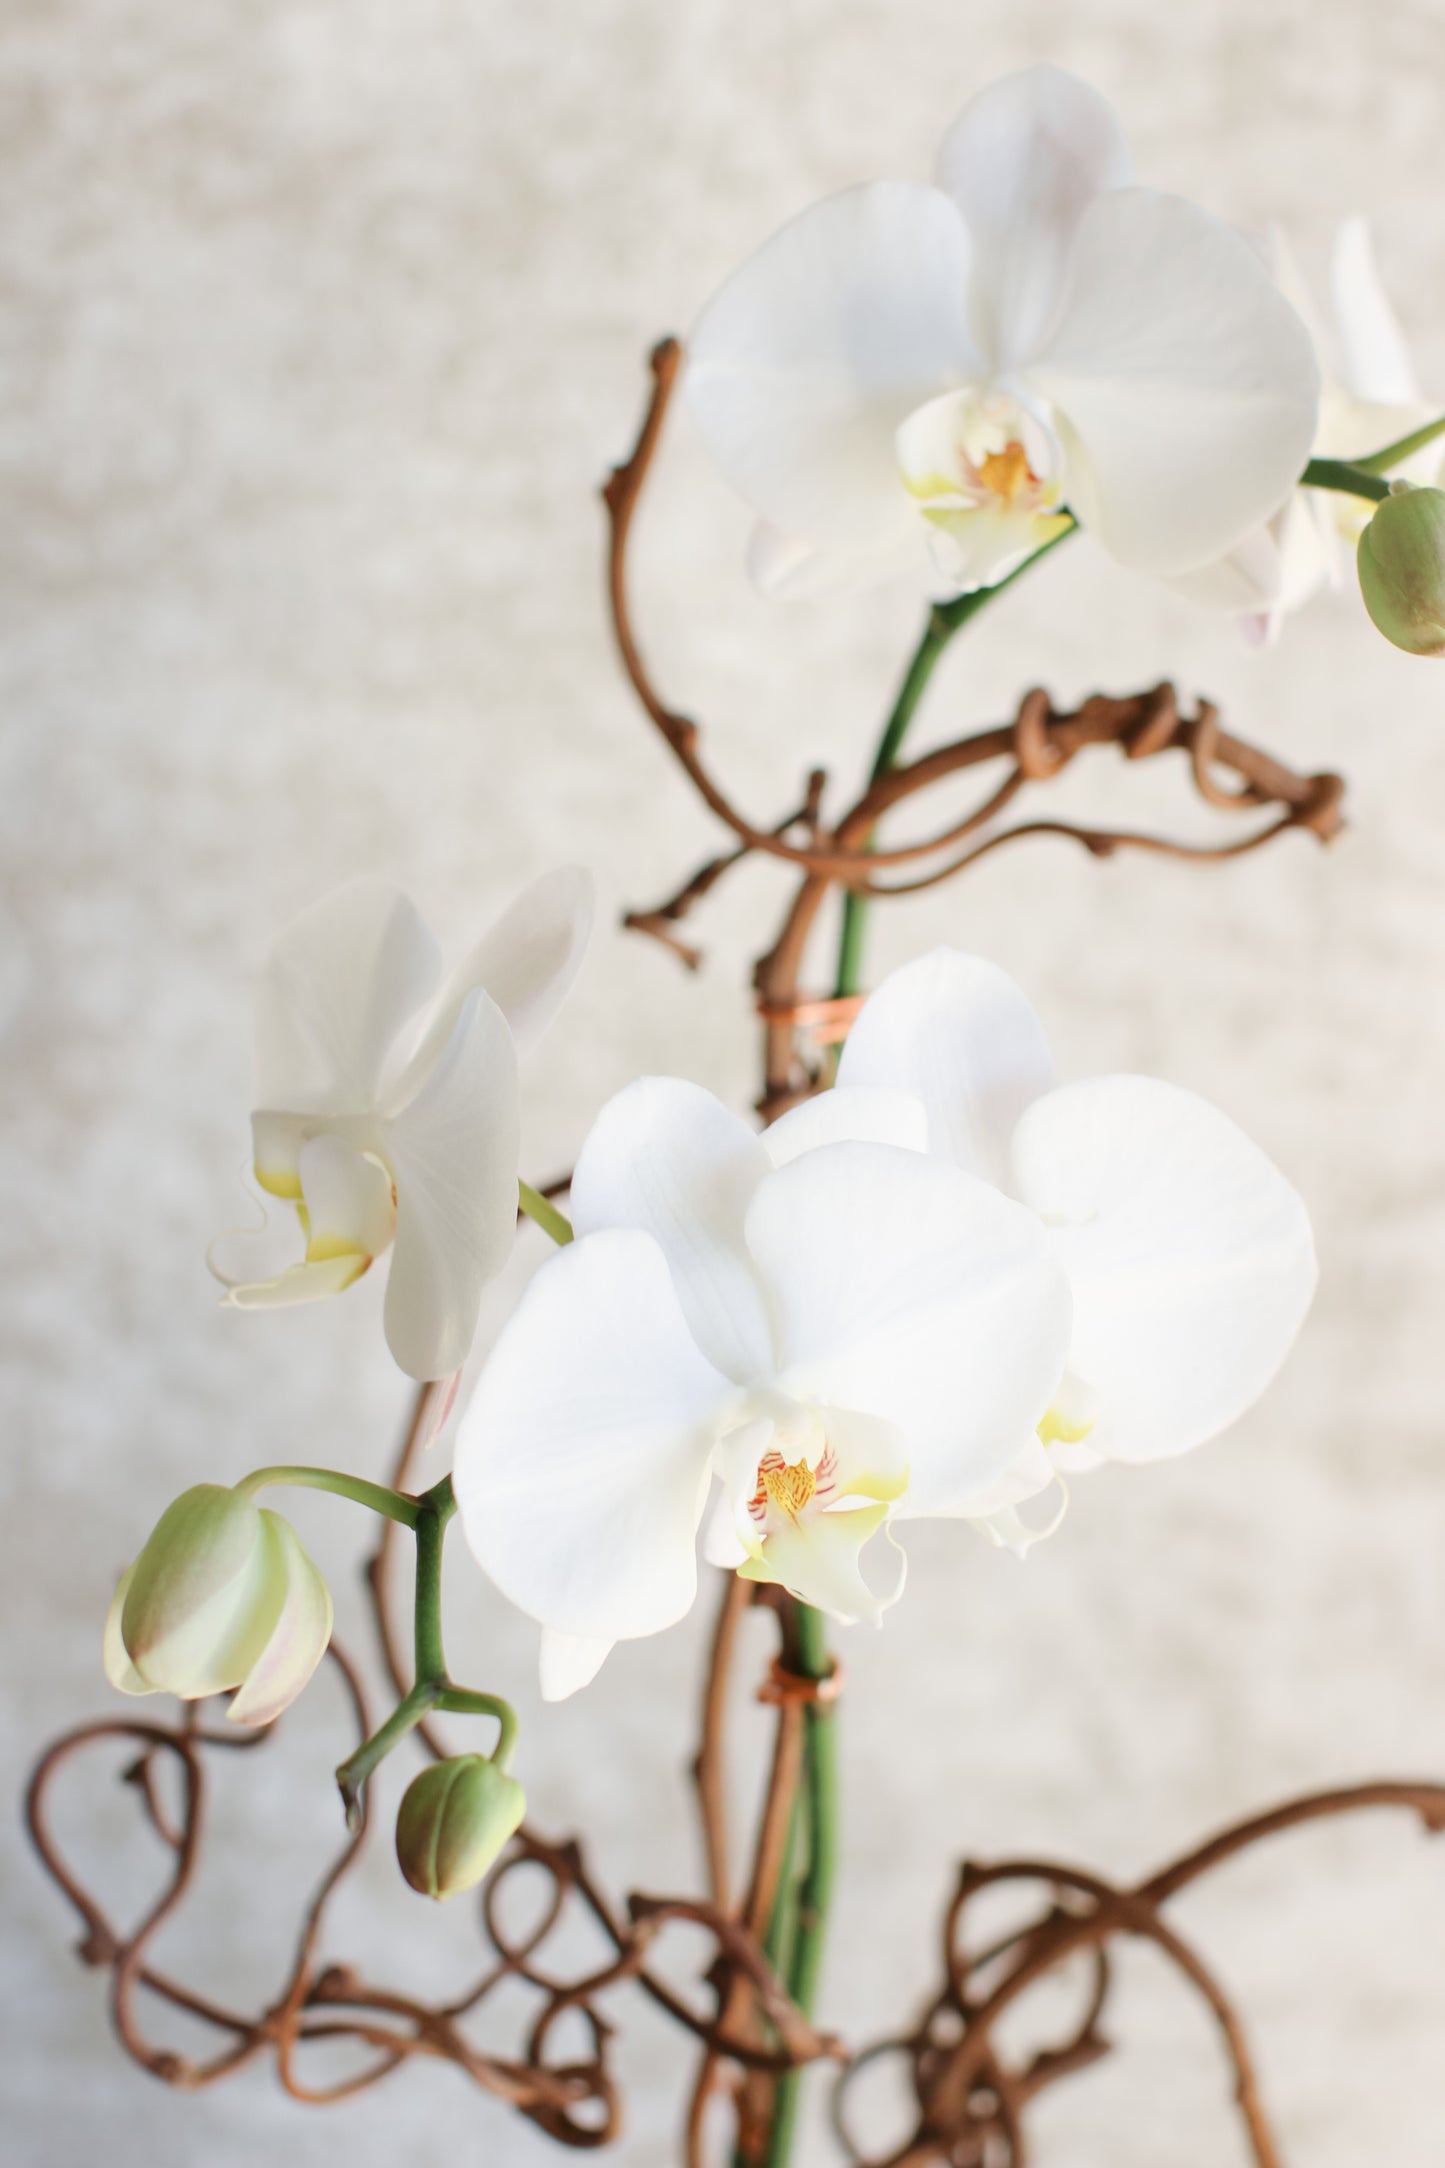 Living Orchid Arrangement